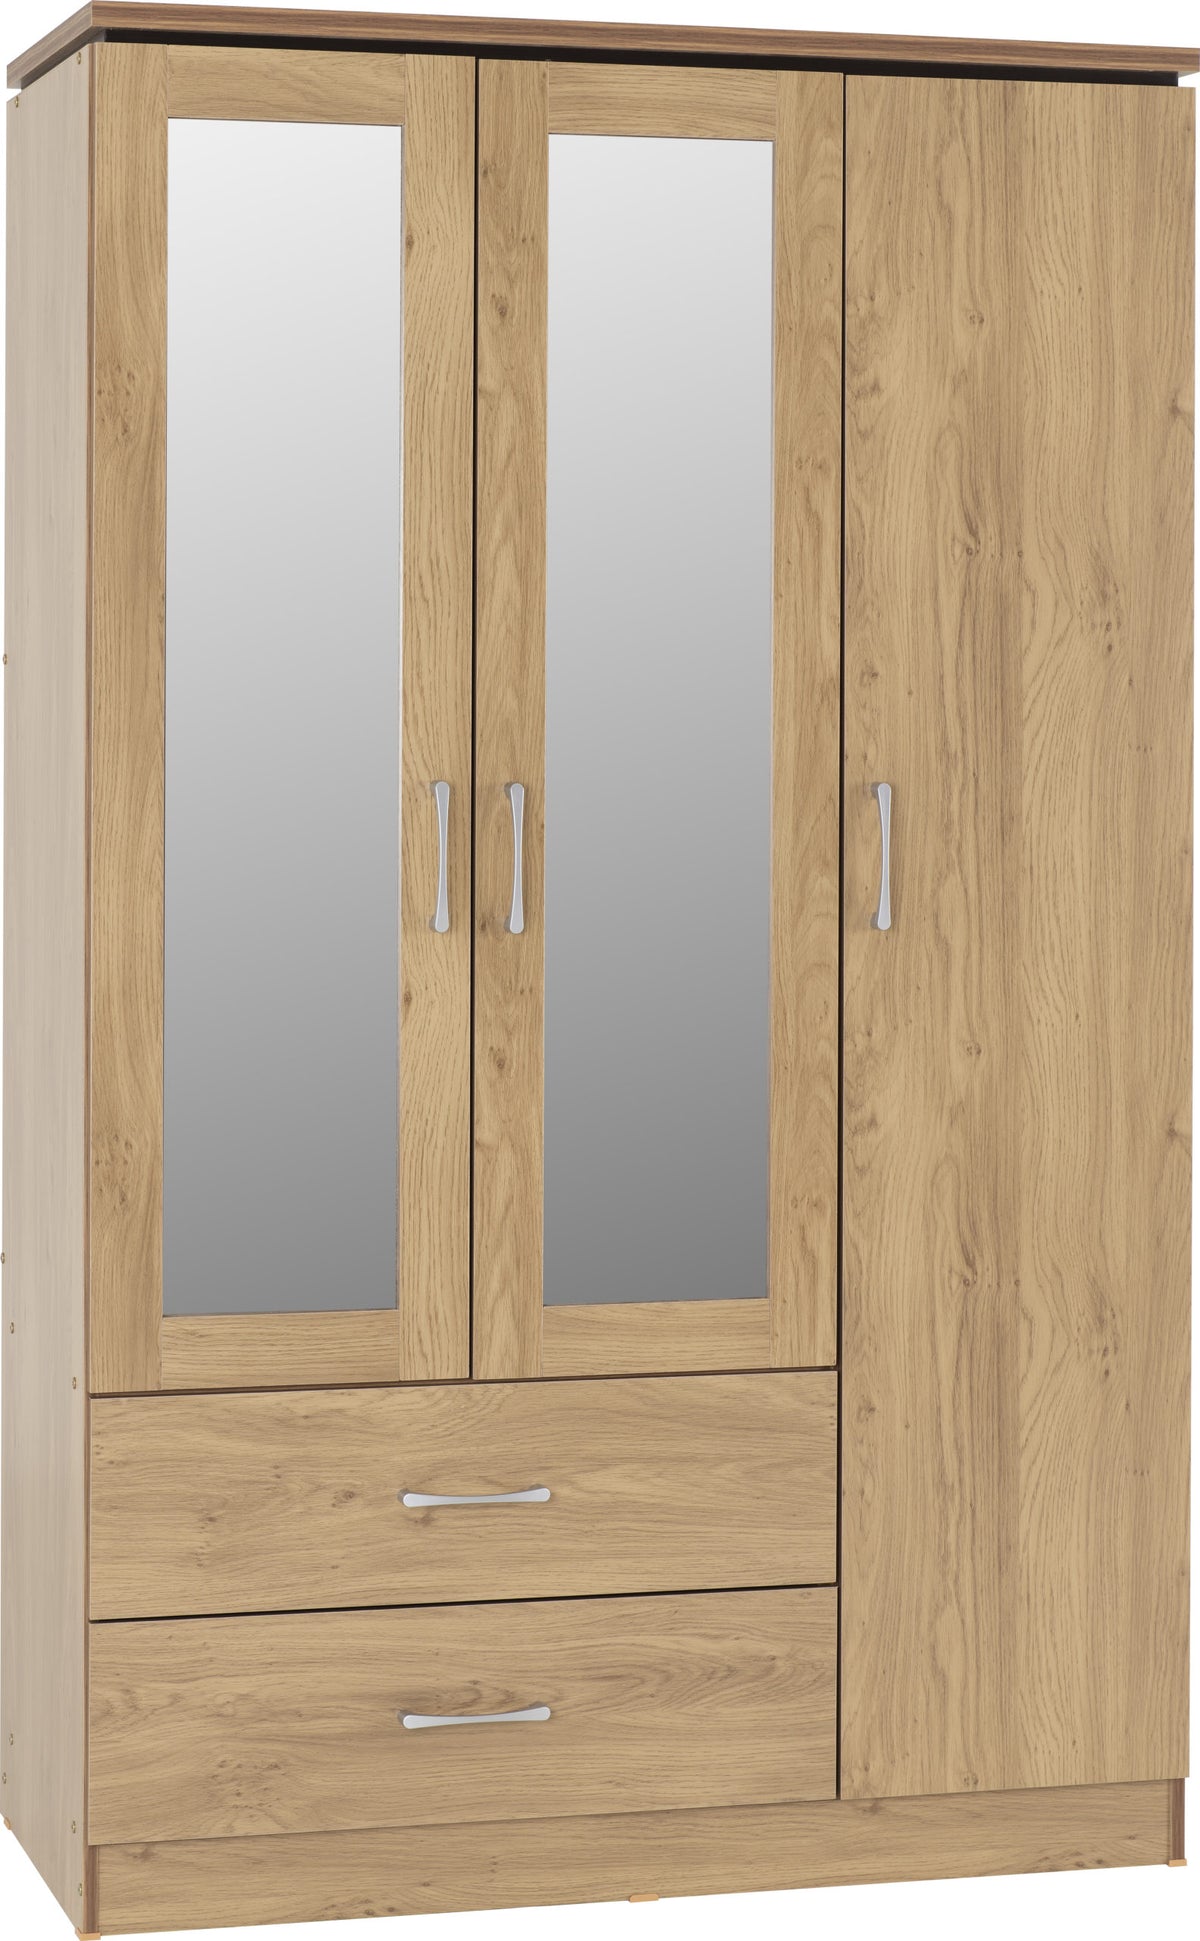 Charles 3 Door 2 Drawer Mirrored Wardrobe in Oak Effect Veneer with Walnut Trim